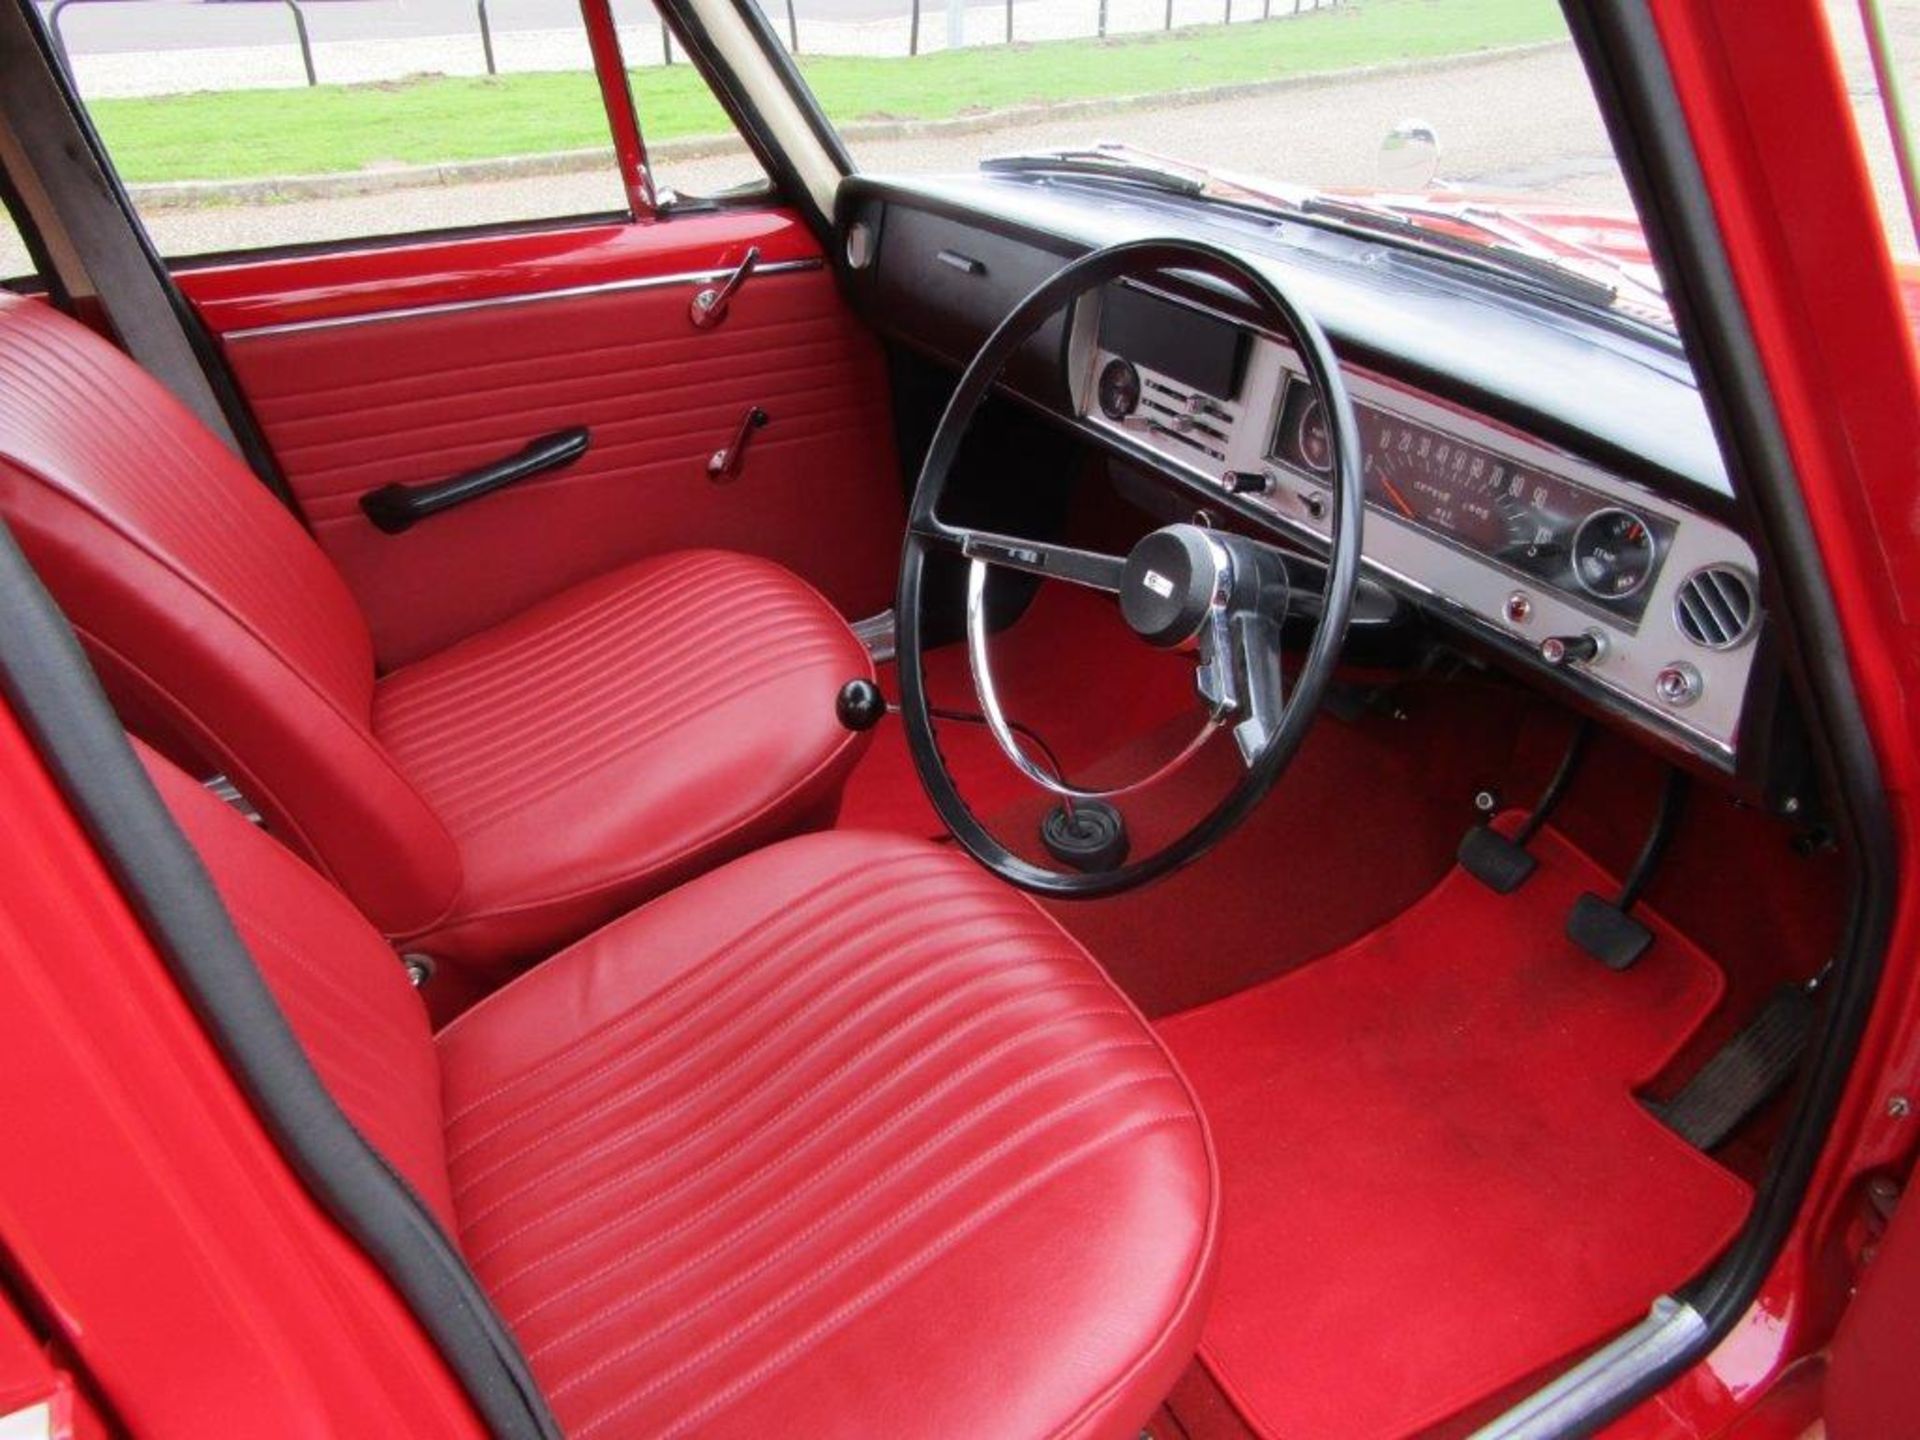 1967 Toyota Corona 1500 - Image 3 of 9